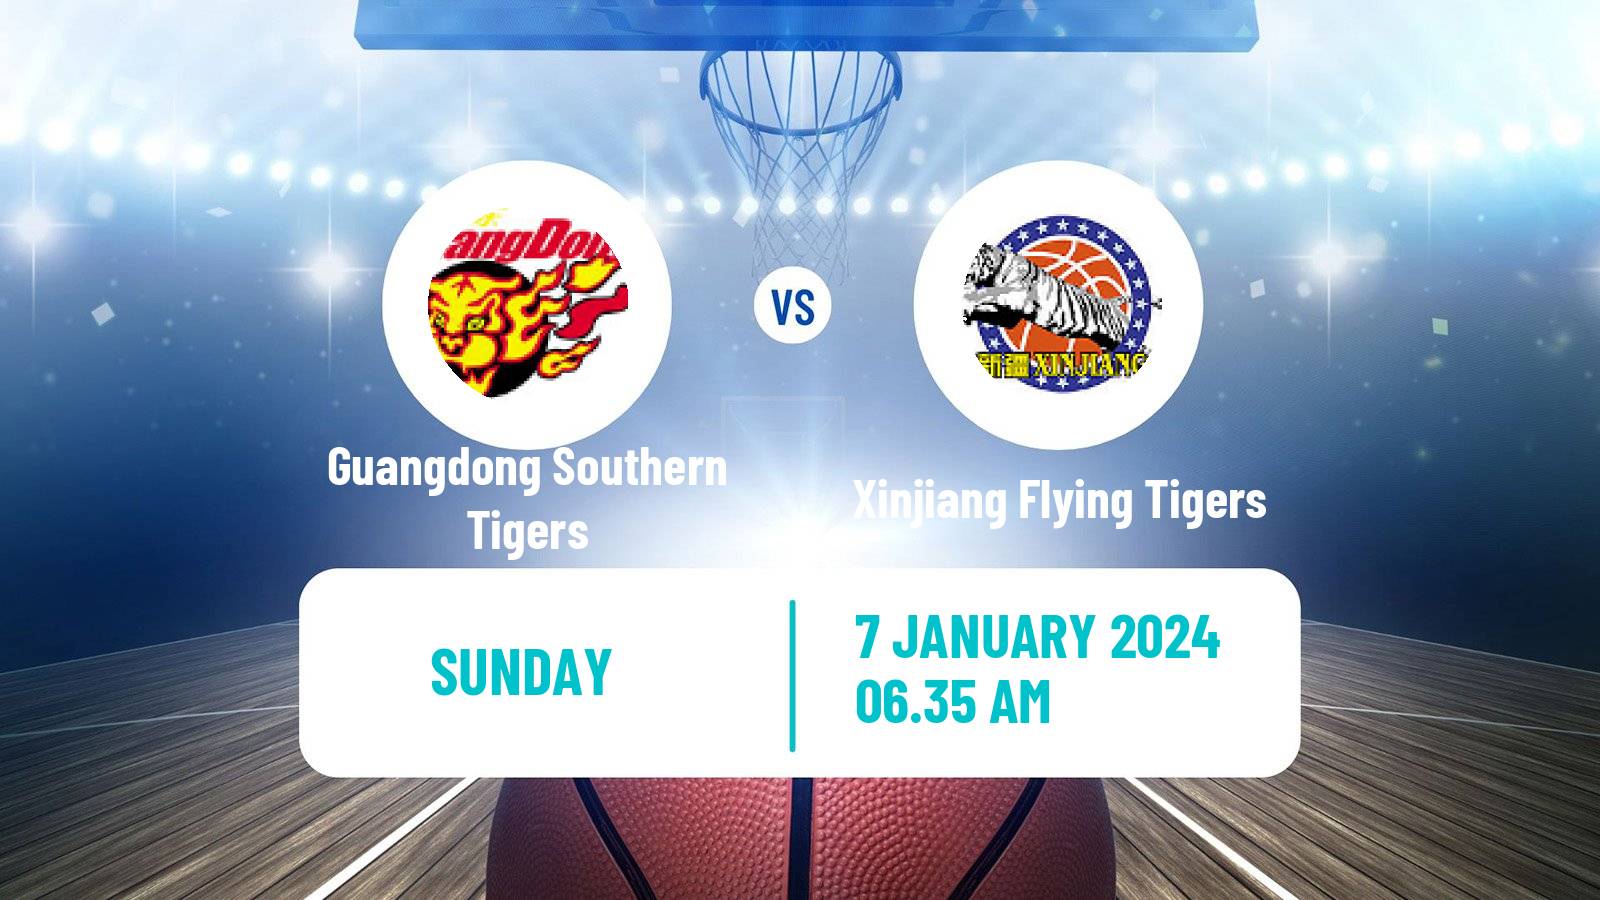 Basketball CBA Guangdong Southern Tigers - Xinjiang Flying Tigers